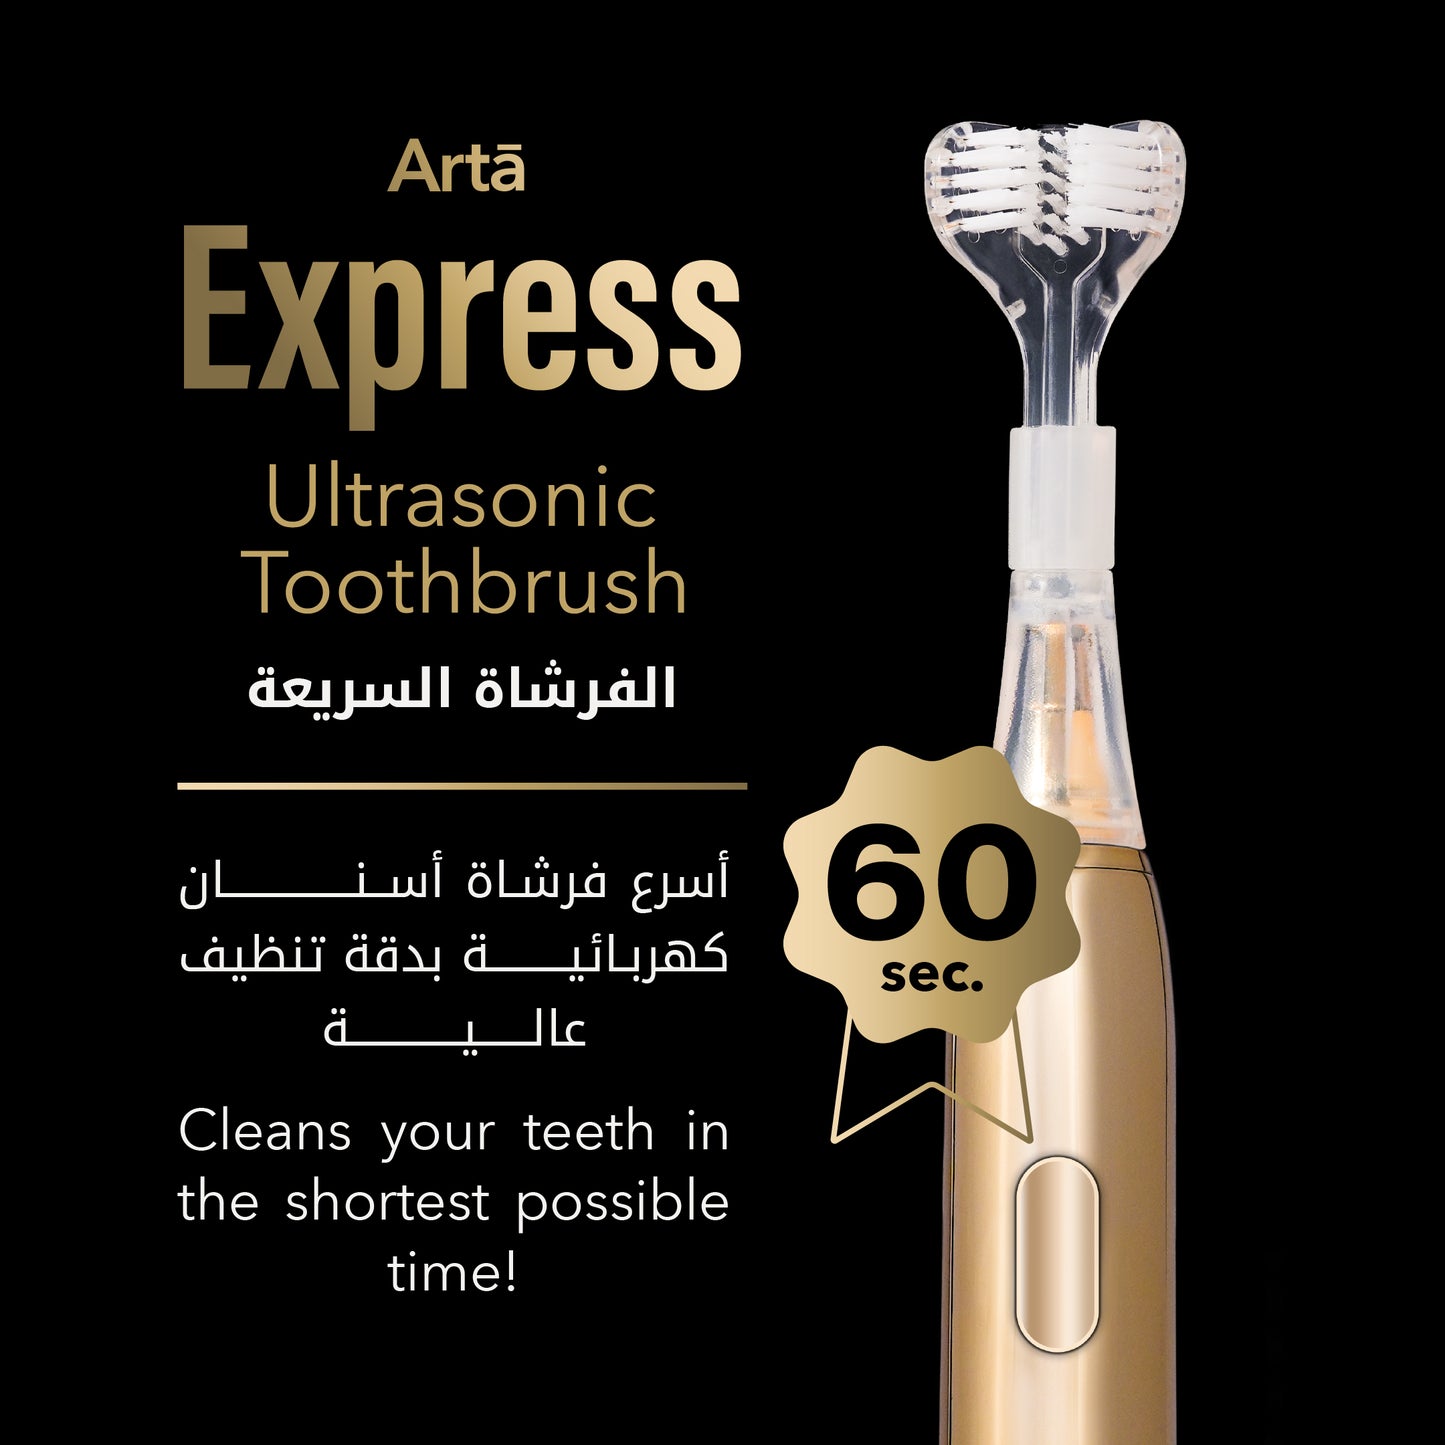 Express Ultrasonic Toothbrush